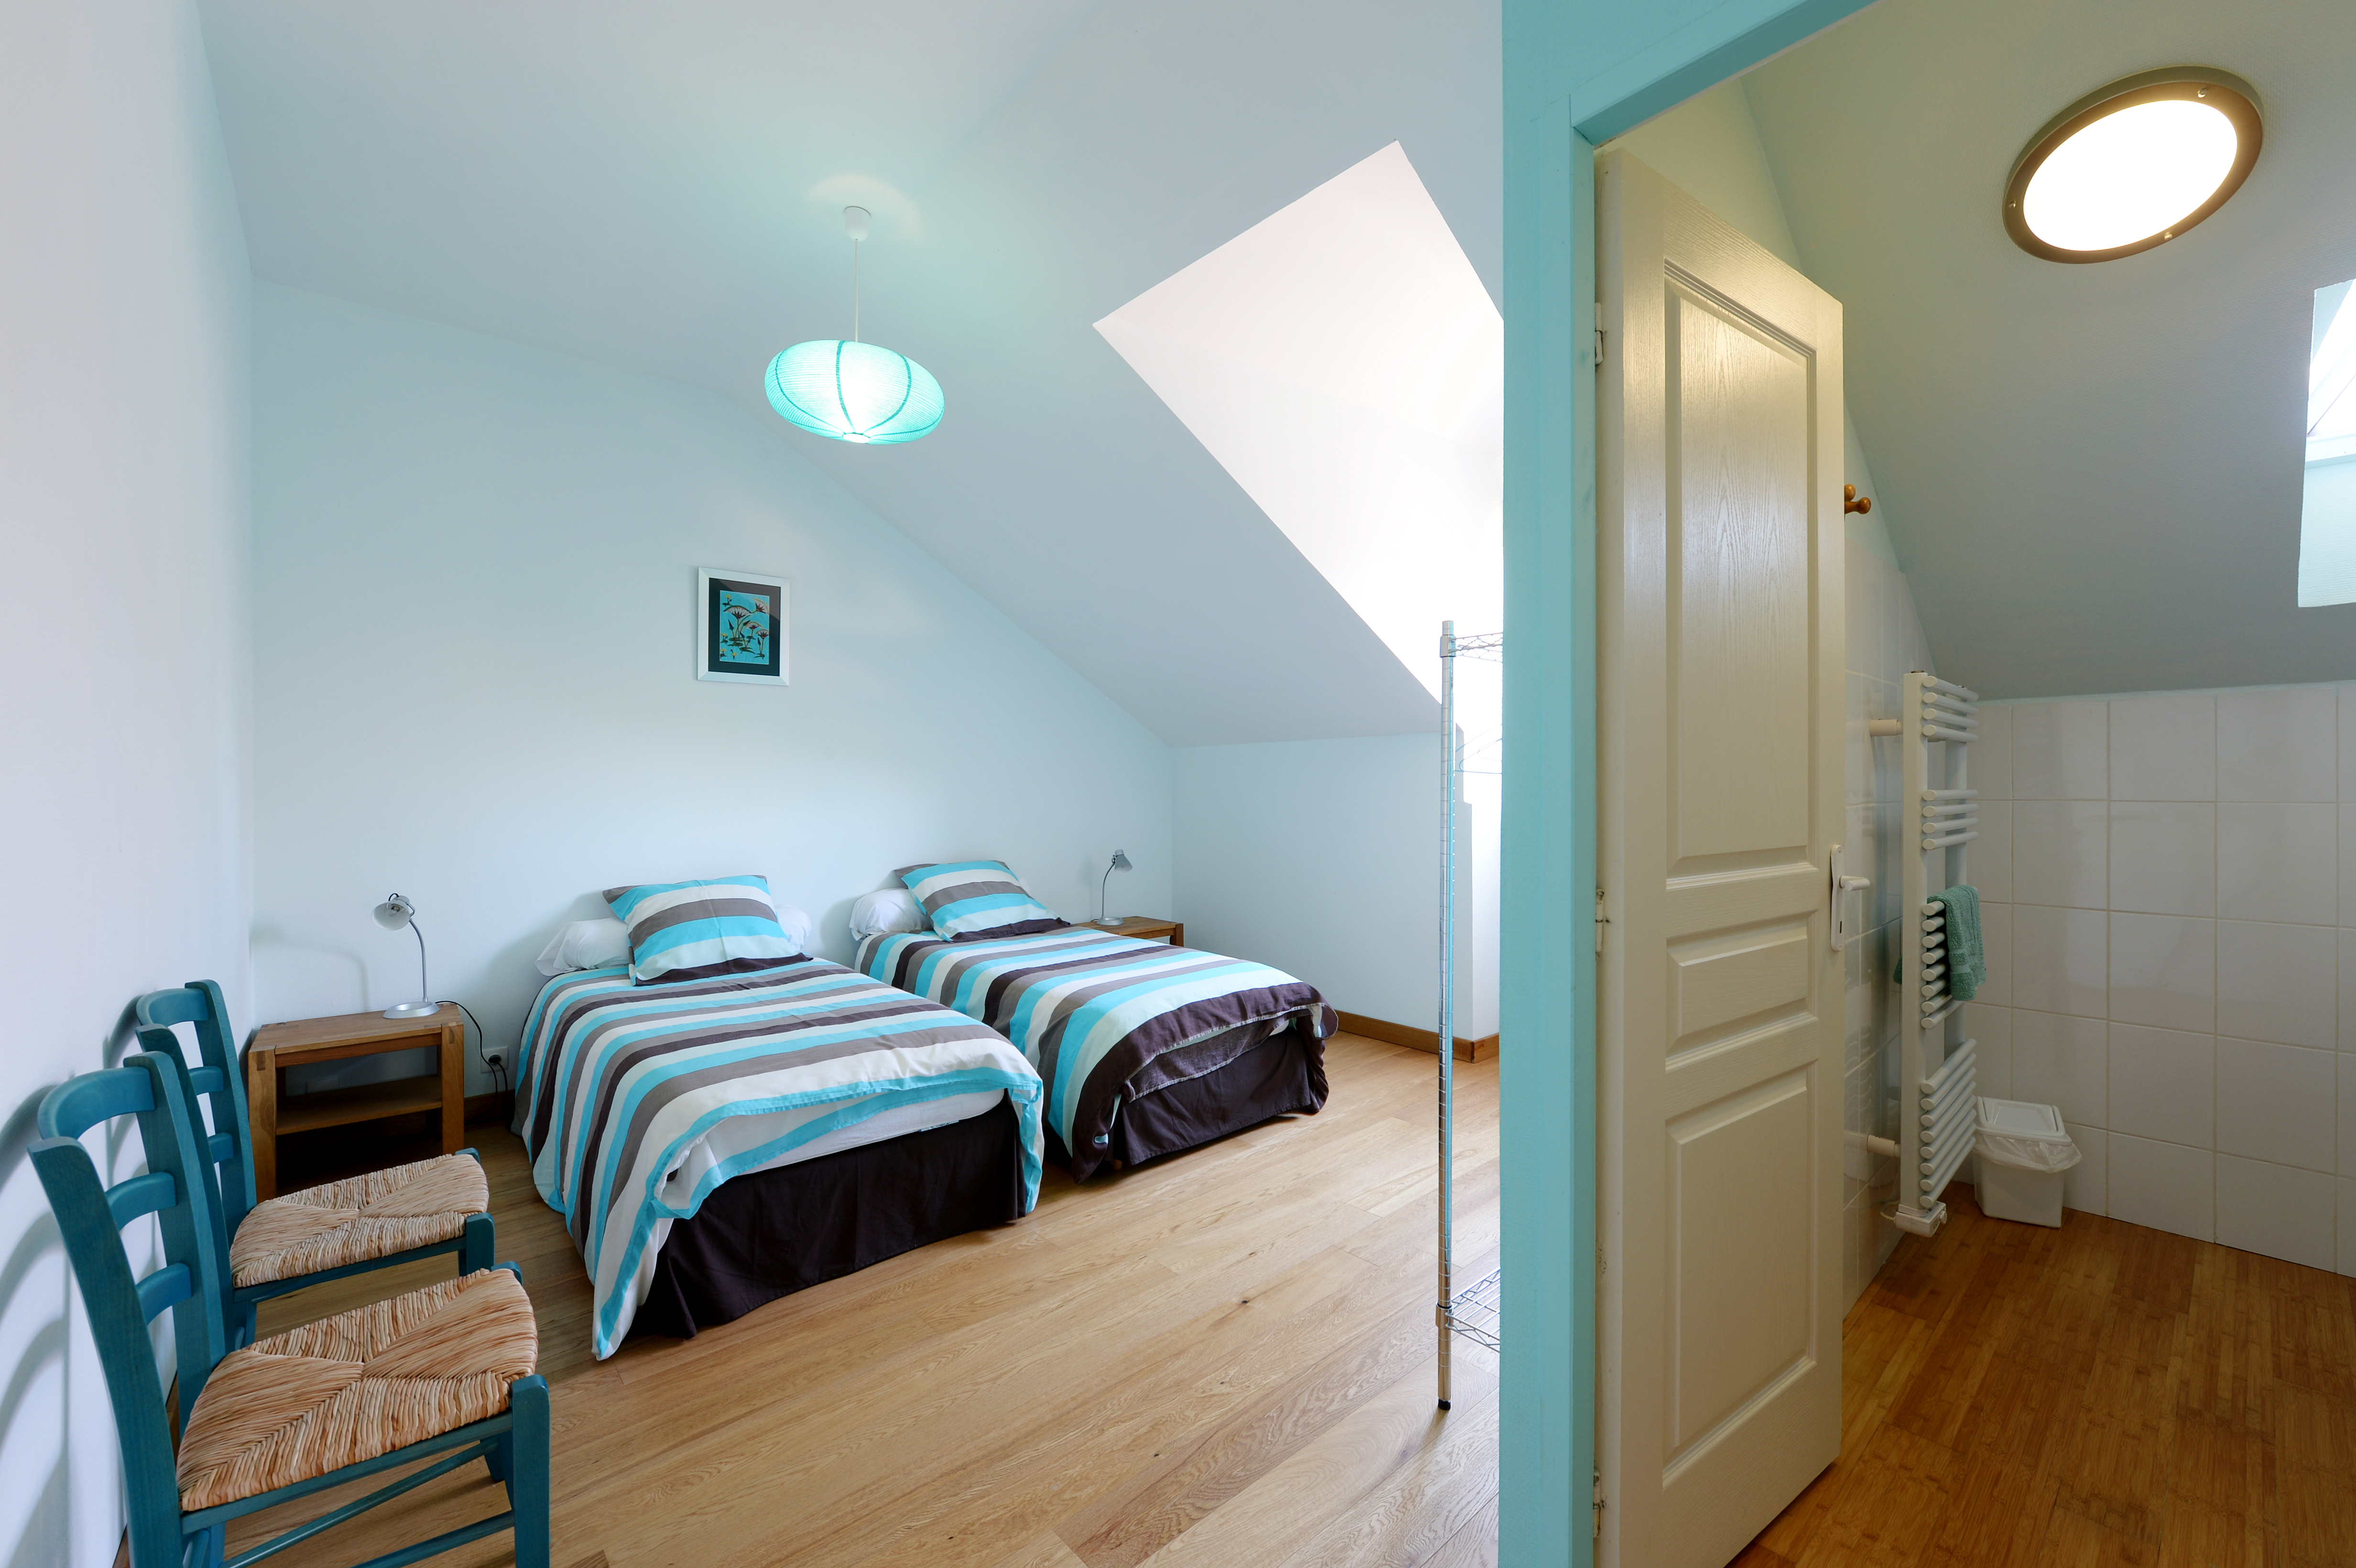 Chambre bleue lumineuse avec trois lits simples et salle de bain privée, alliant confort et simplicité